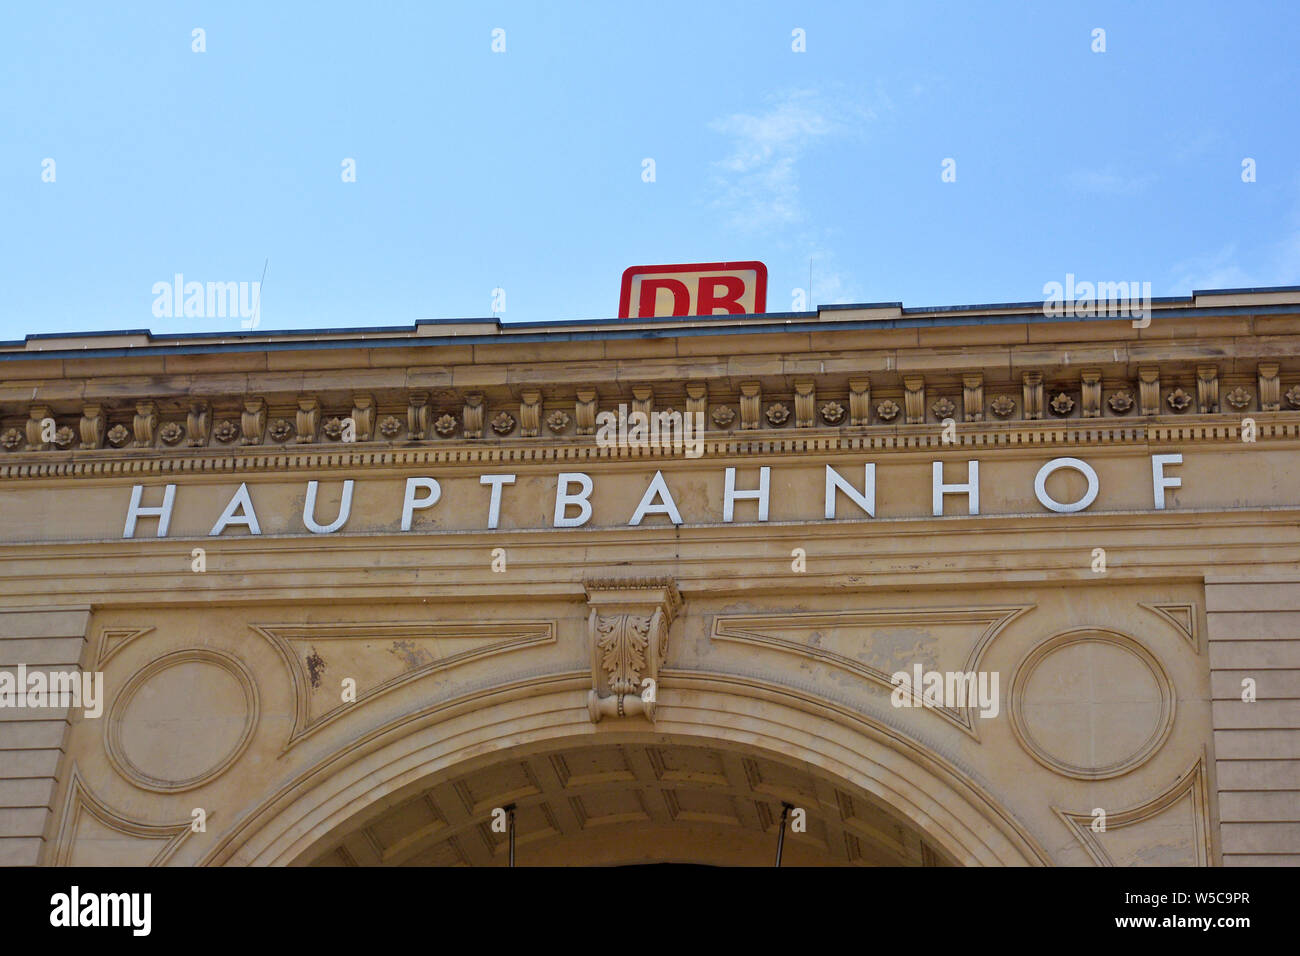 Mannheim, Allemagne - Juillet 2019 : Façade de la gare principale de l'allemand et la "Deutsche Bahn" ci-dessus le logo de l'entreprise ferroviaire Banque D'Images